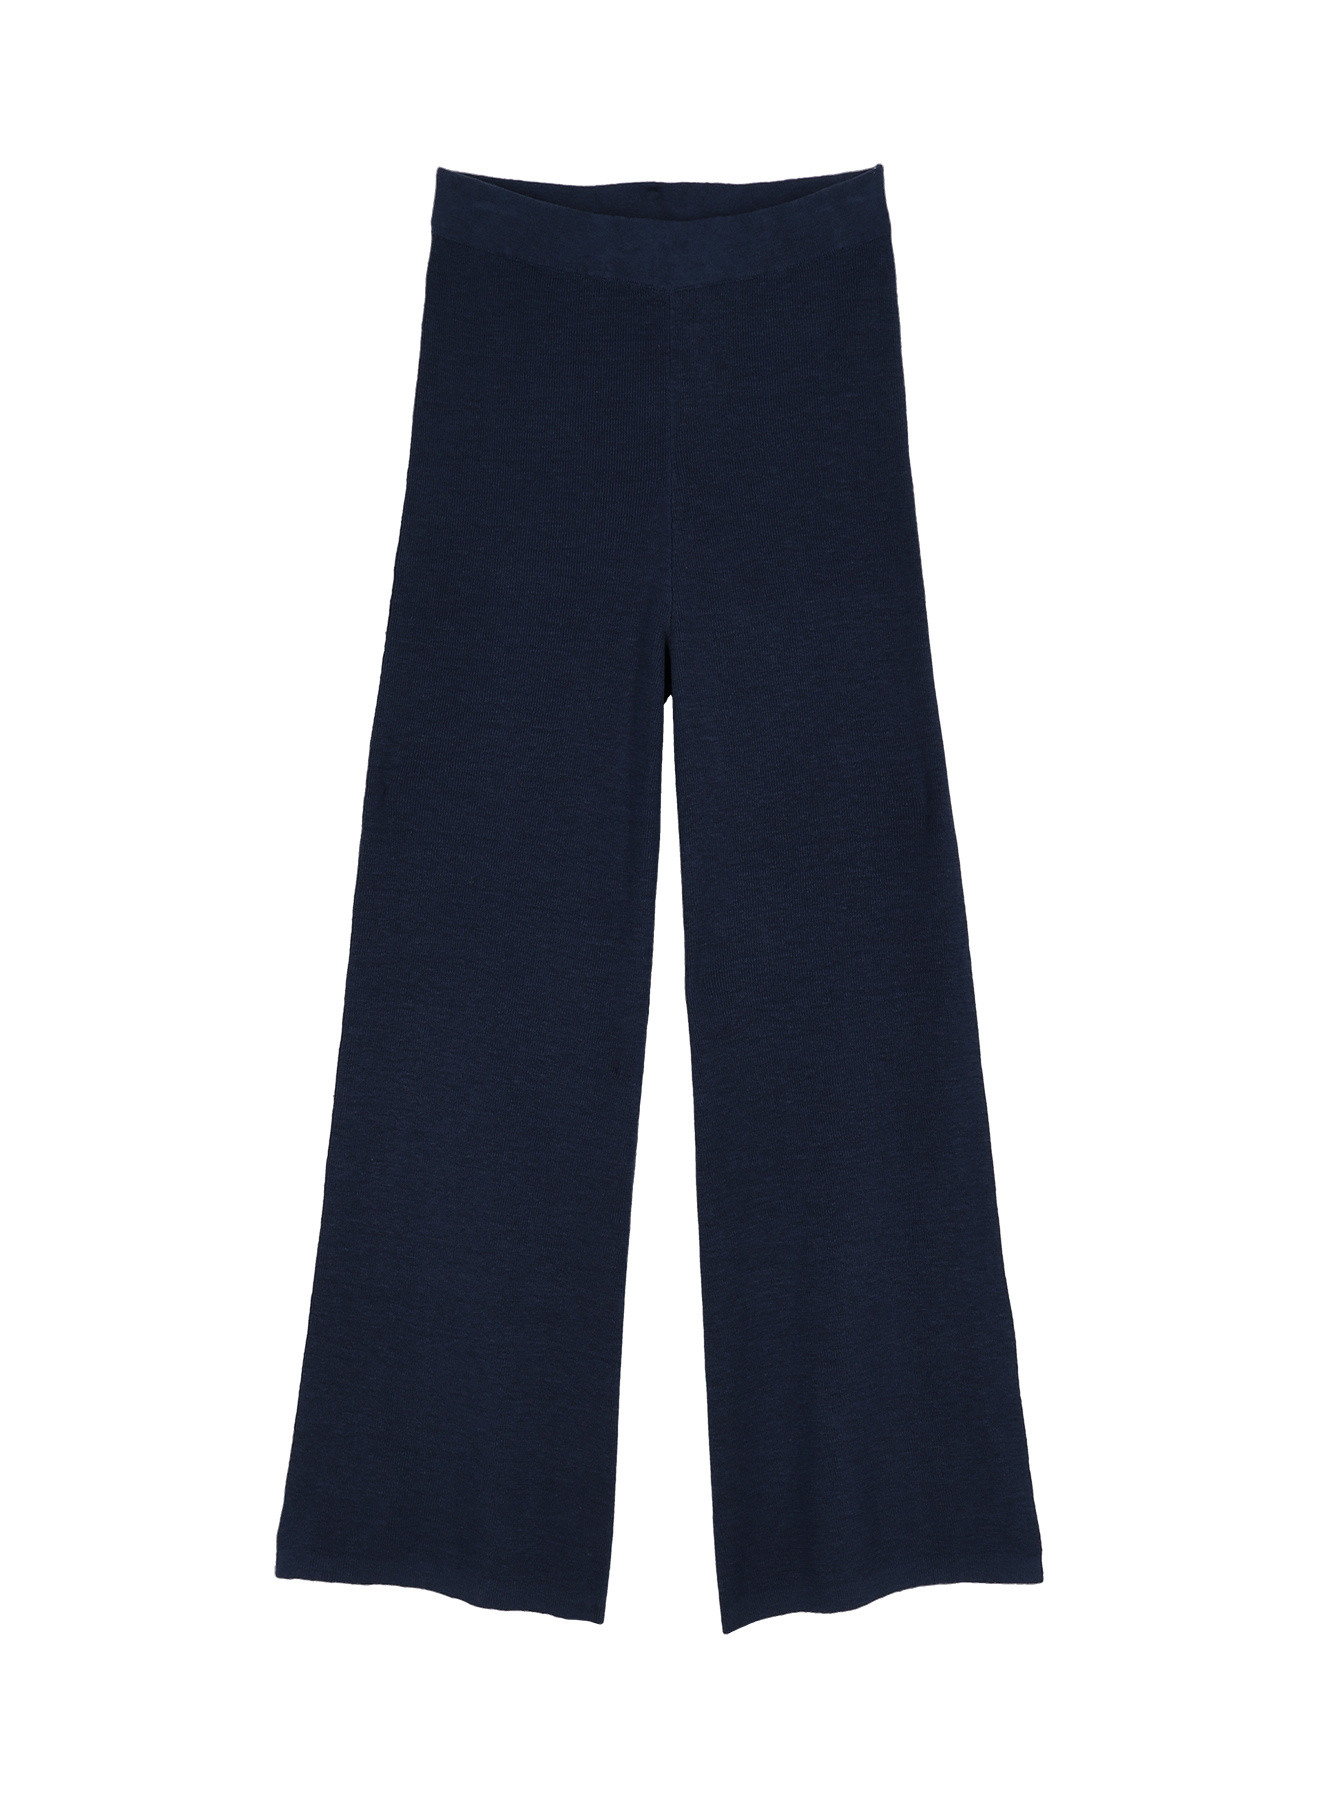 Pantalone, Blu, large image number 0